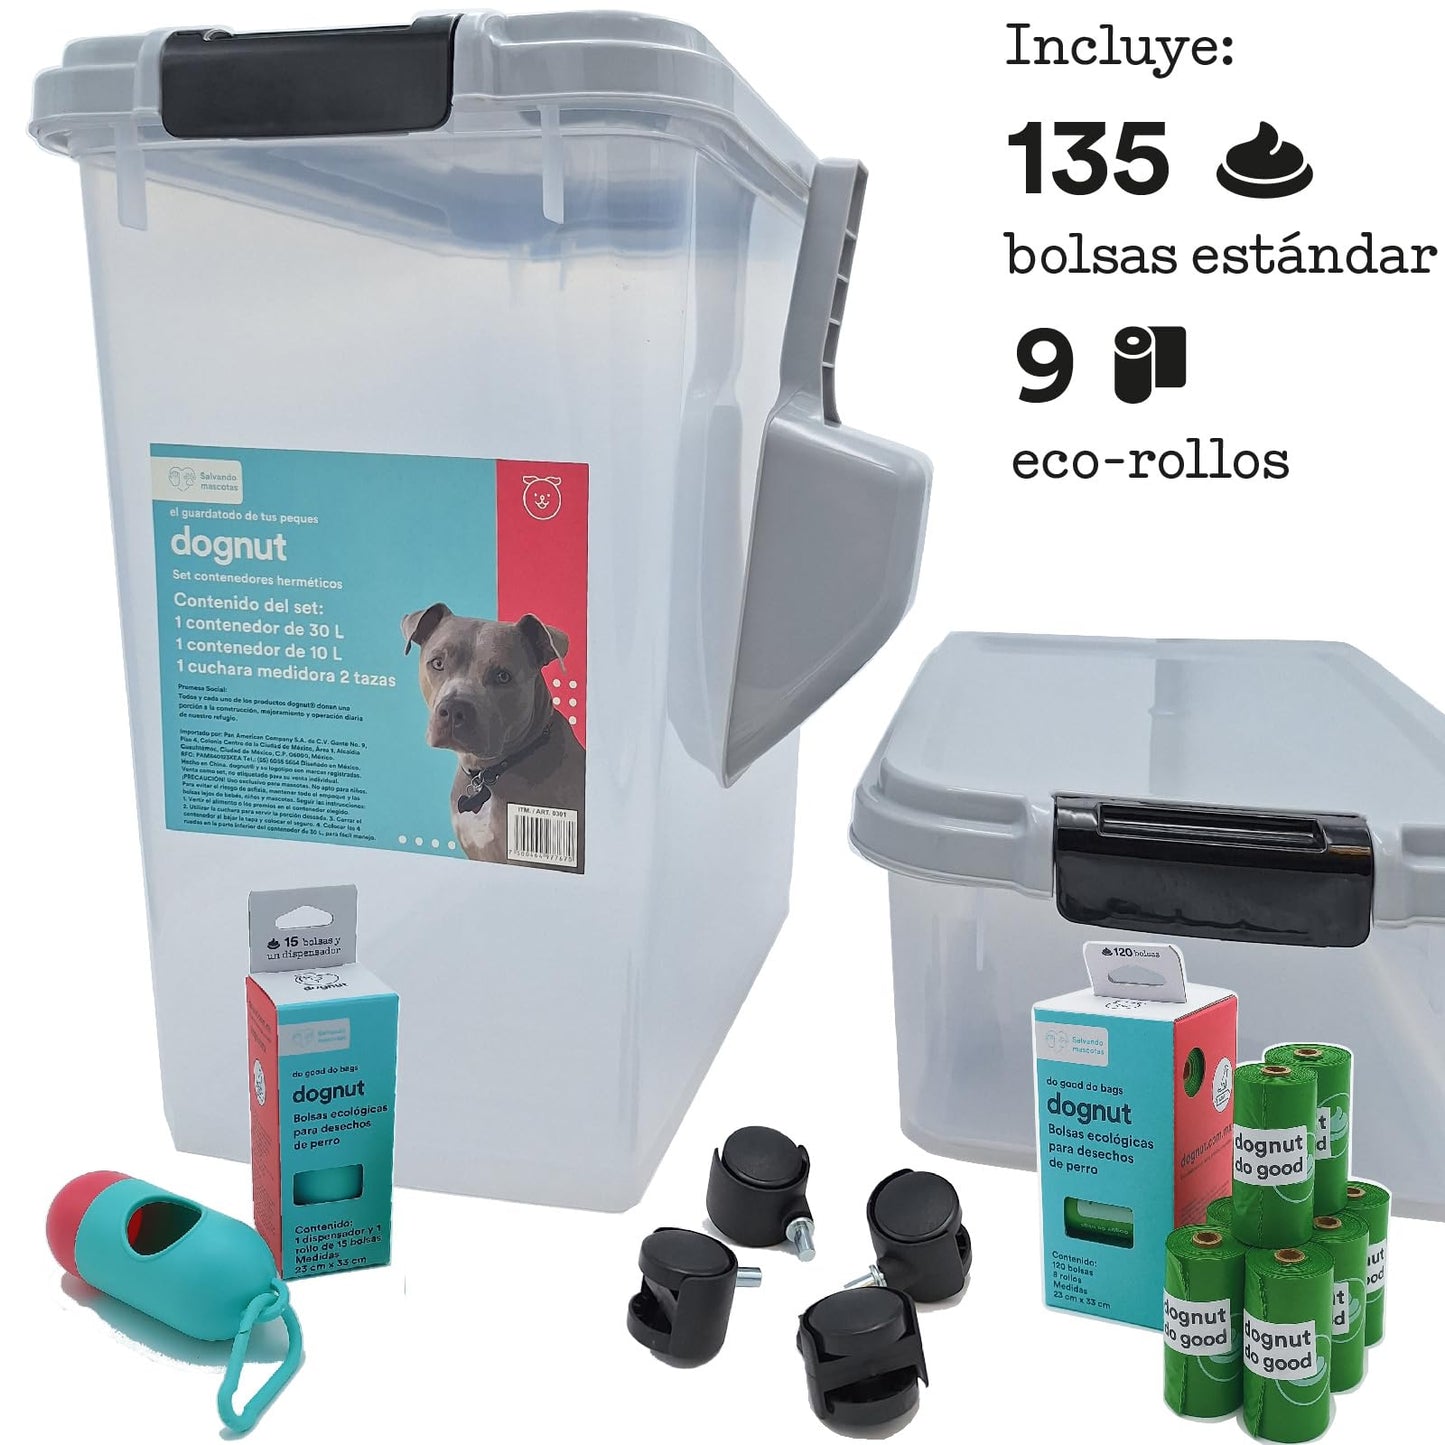 dognut - 3 Piezas Contenedor Hermético para Alimento de Mascotas, Capacidad 11 y 4 Kgs, con Cuchara Medidora, sin BPA, con llantas para un Fácil Transporte